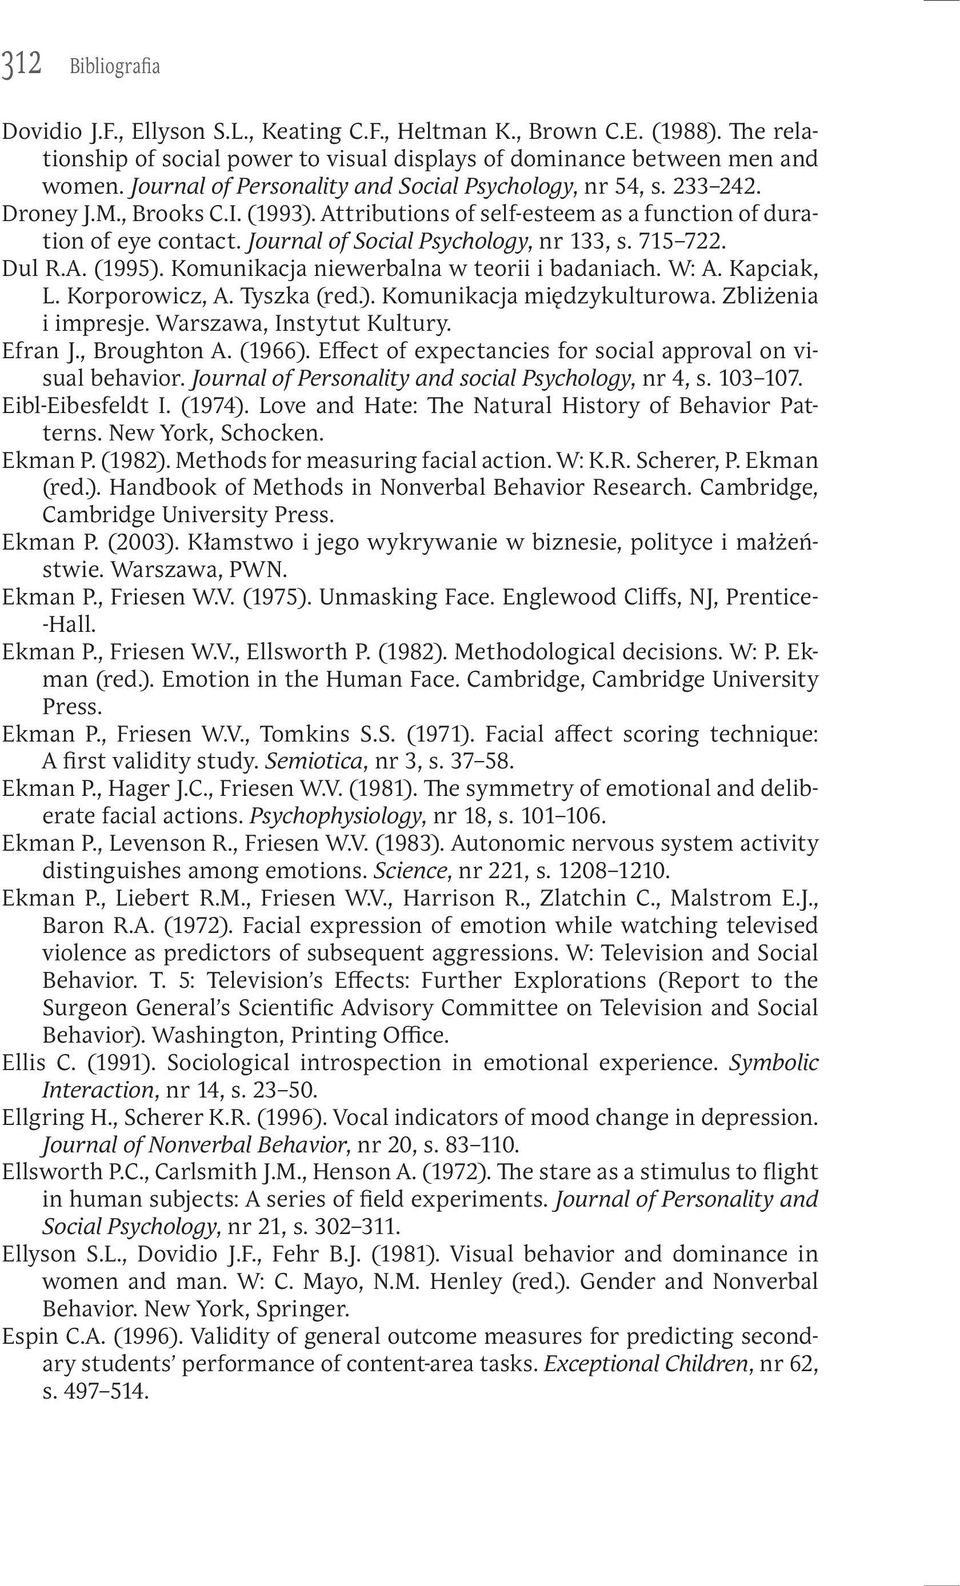 Journal of Social Psychology, nr 133, s. 715 722. Dul R.A. (1995). Komunikacja niewerbalna w teorii i badaniach. W: A. Kapciak, L. Korporowicz, A. Tyszka (red.). Komunikacja międzykulturowa.